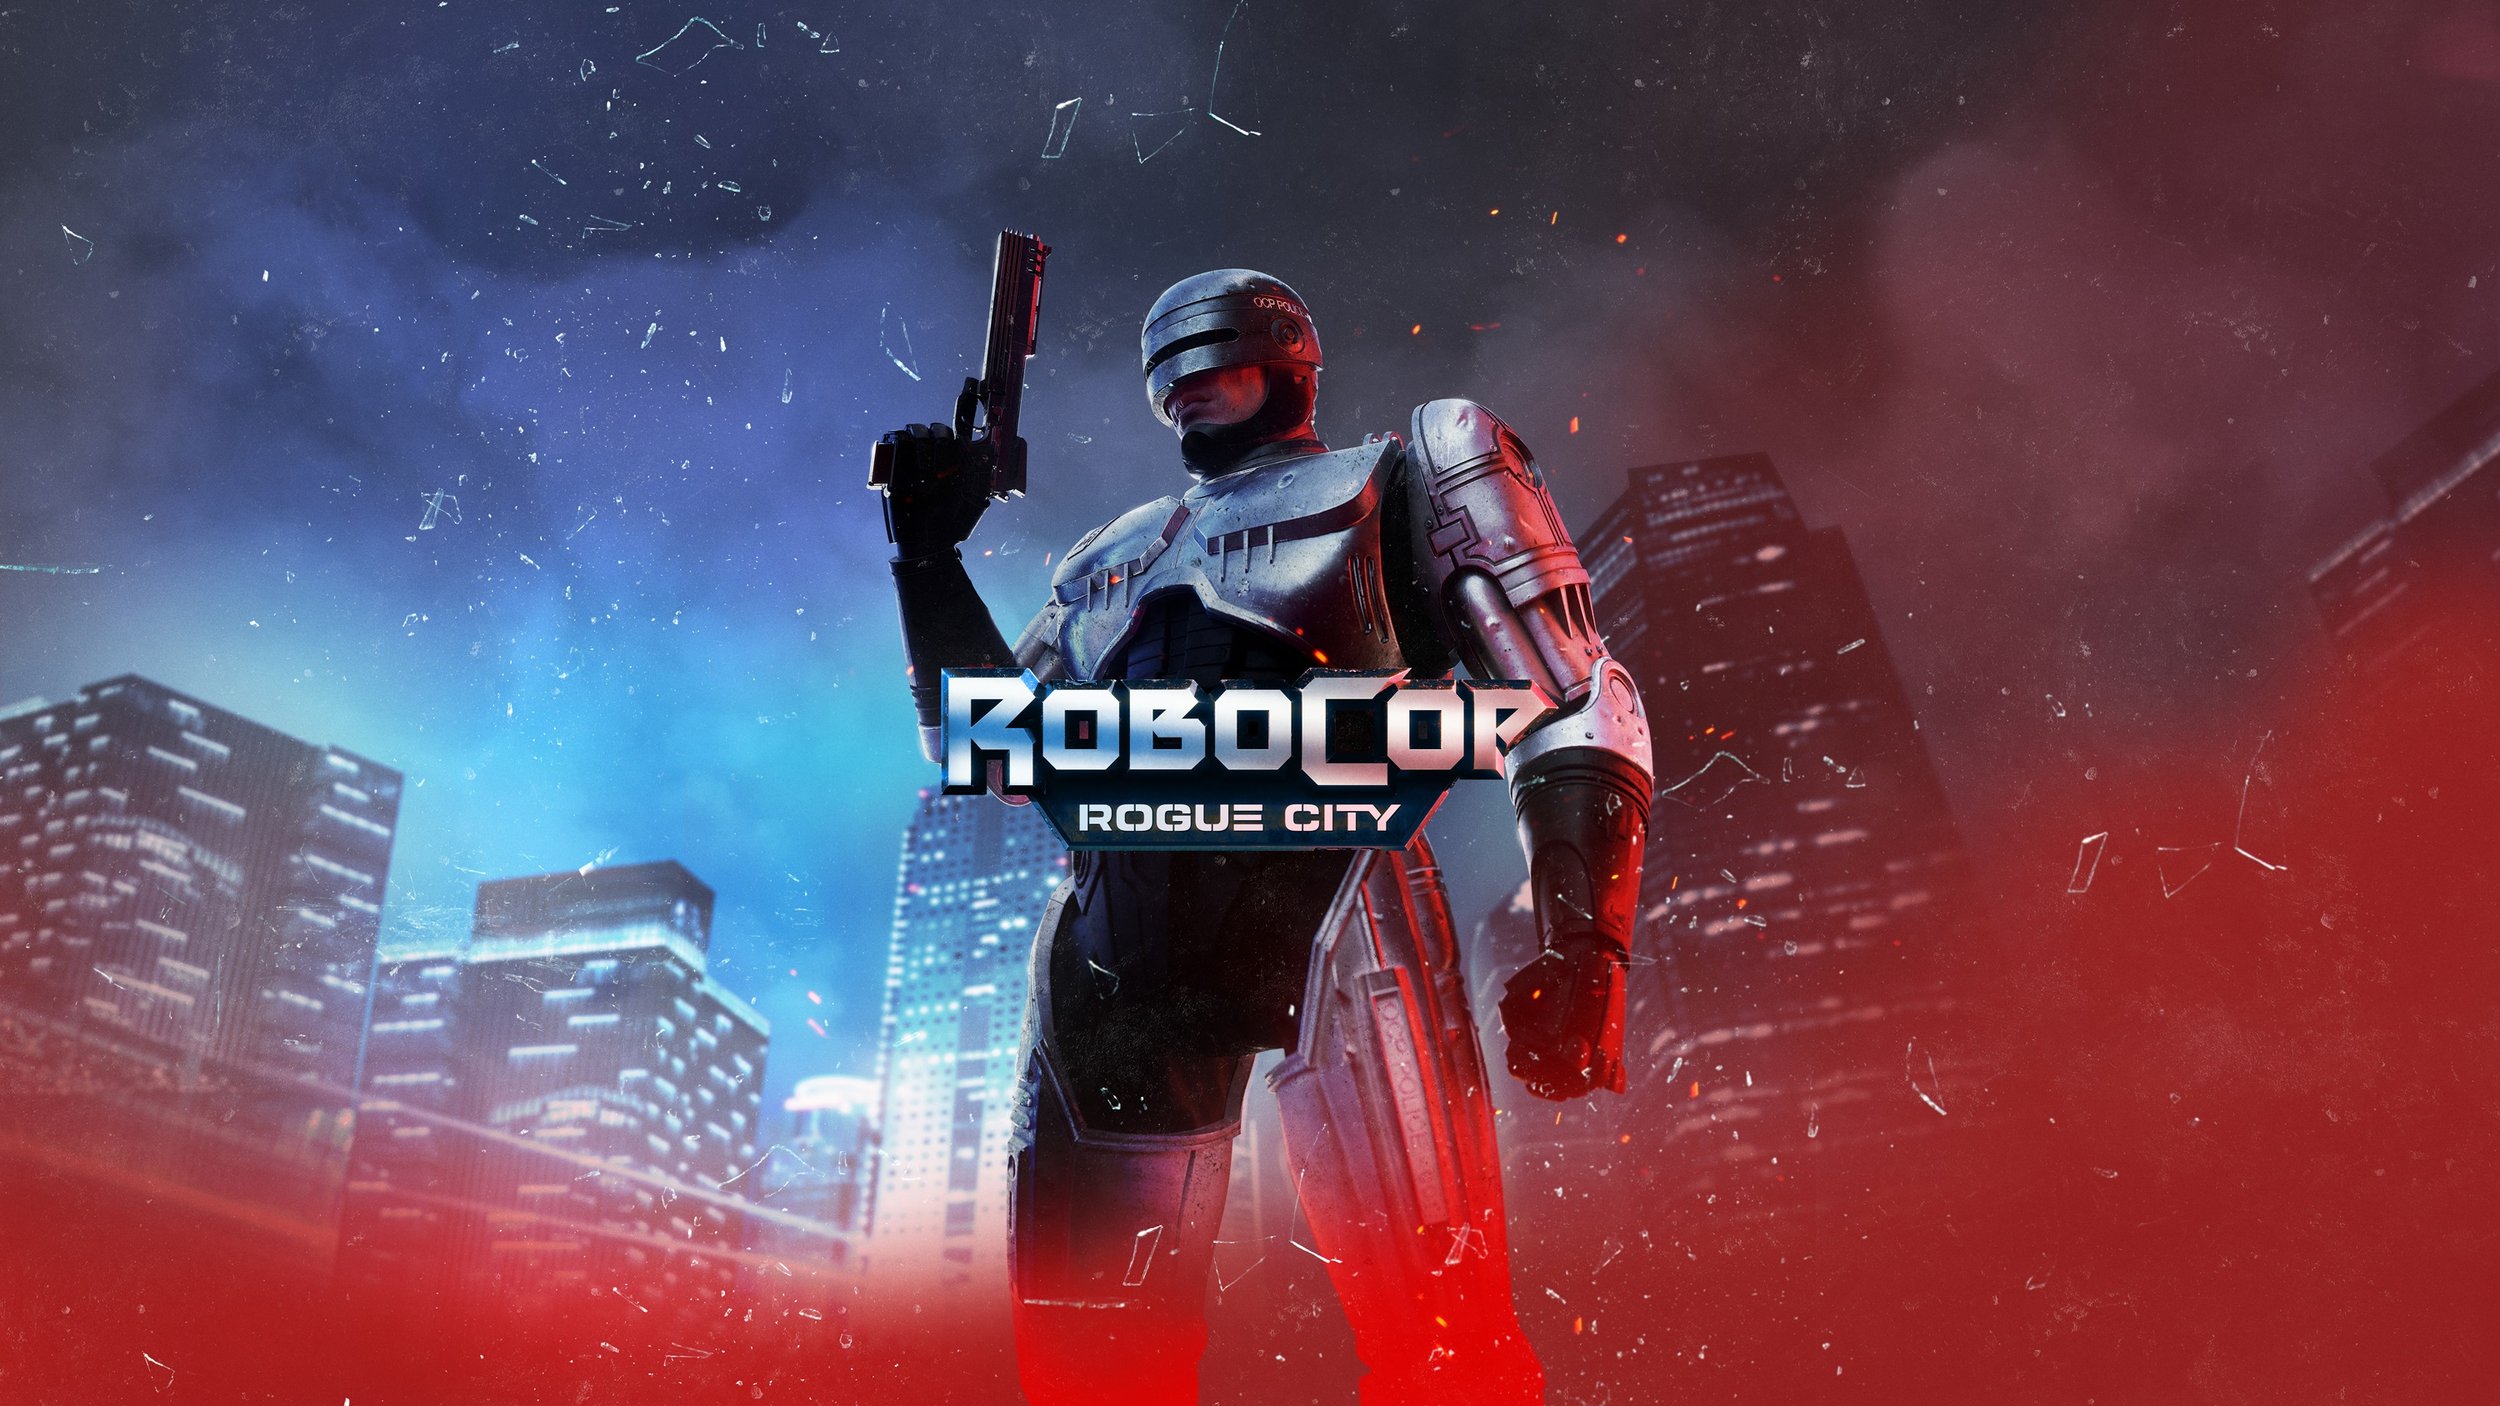 Robocop Rogue City ::.. Playstation 5 Ps5